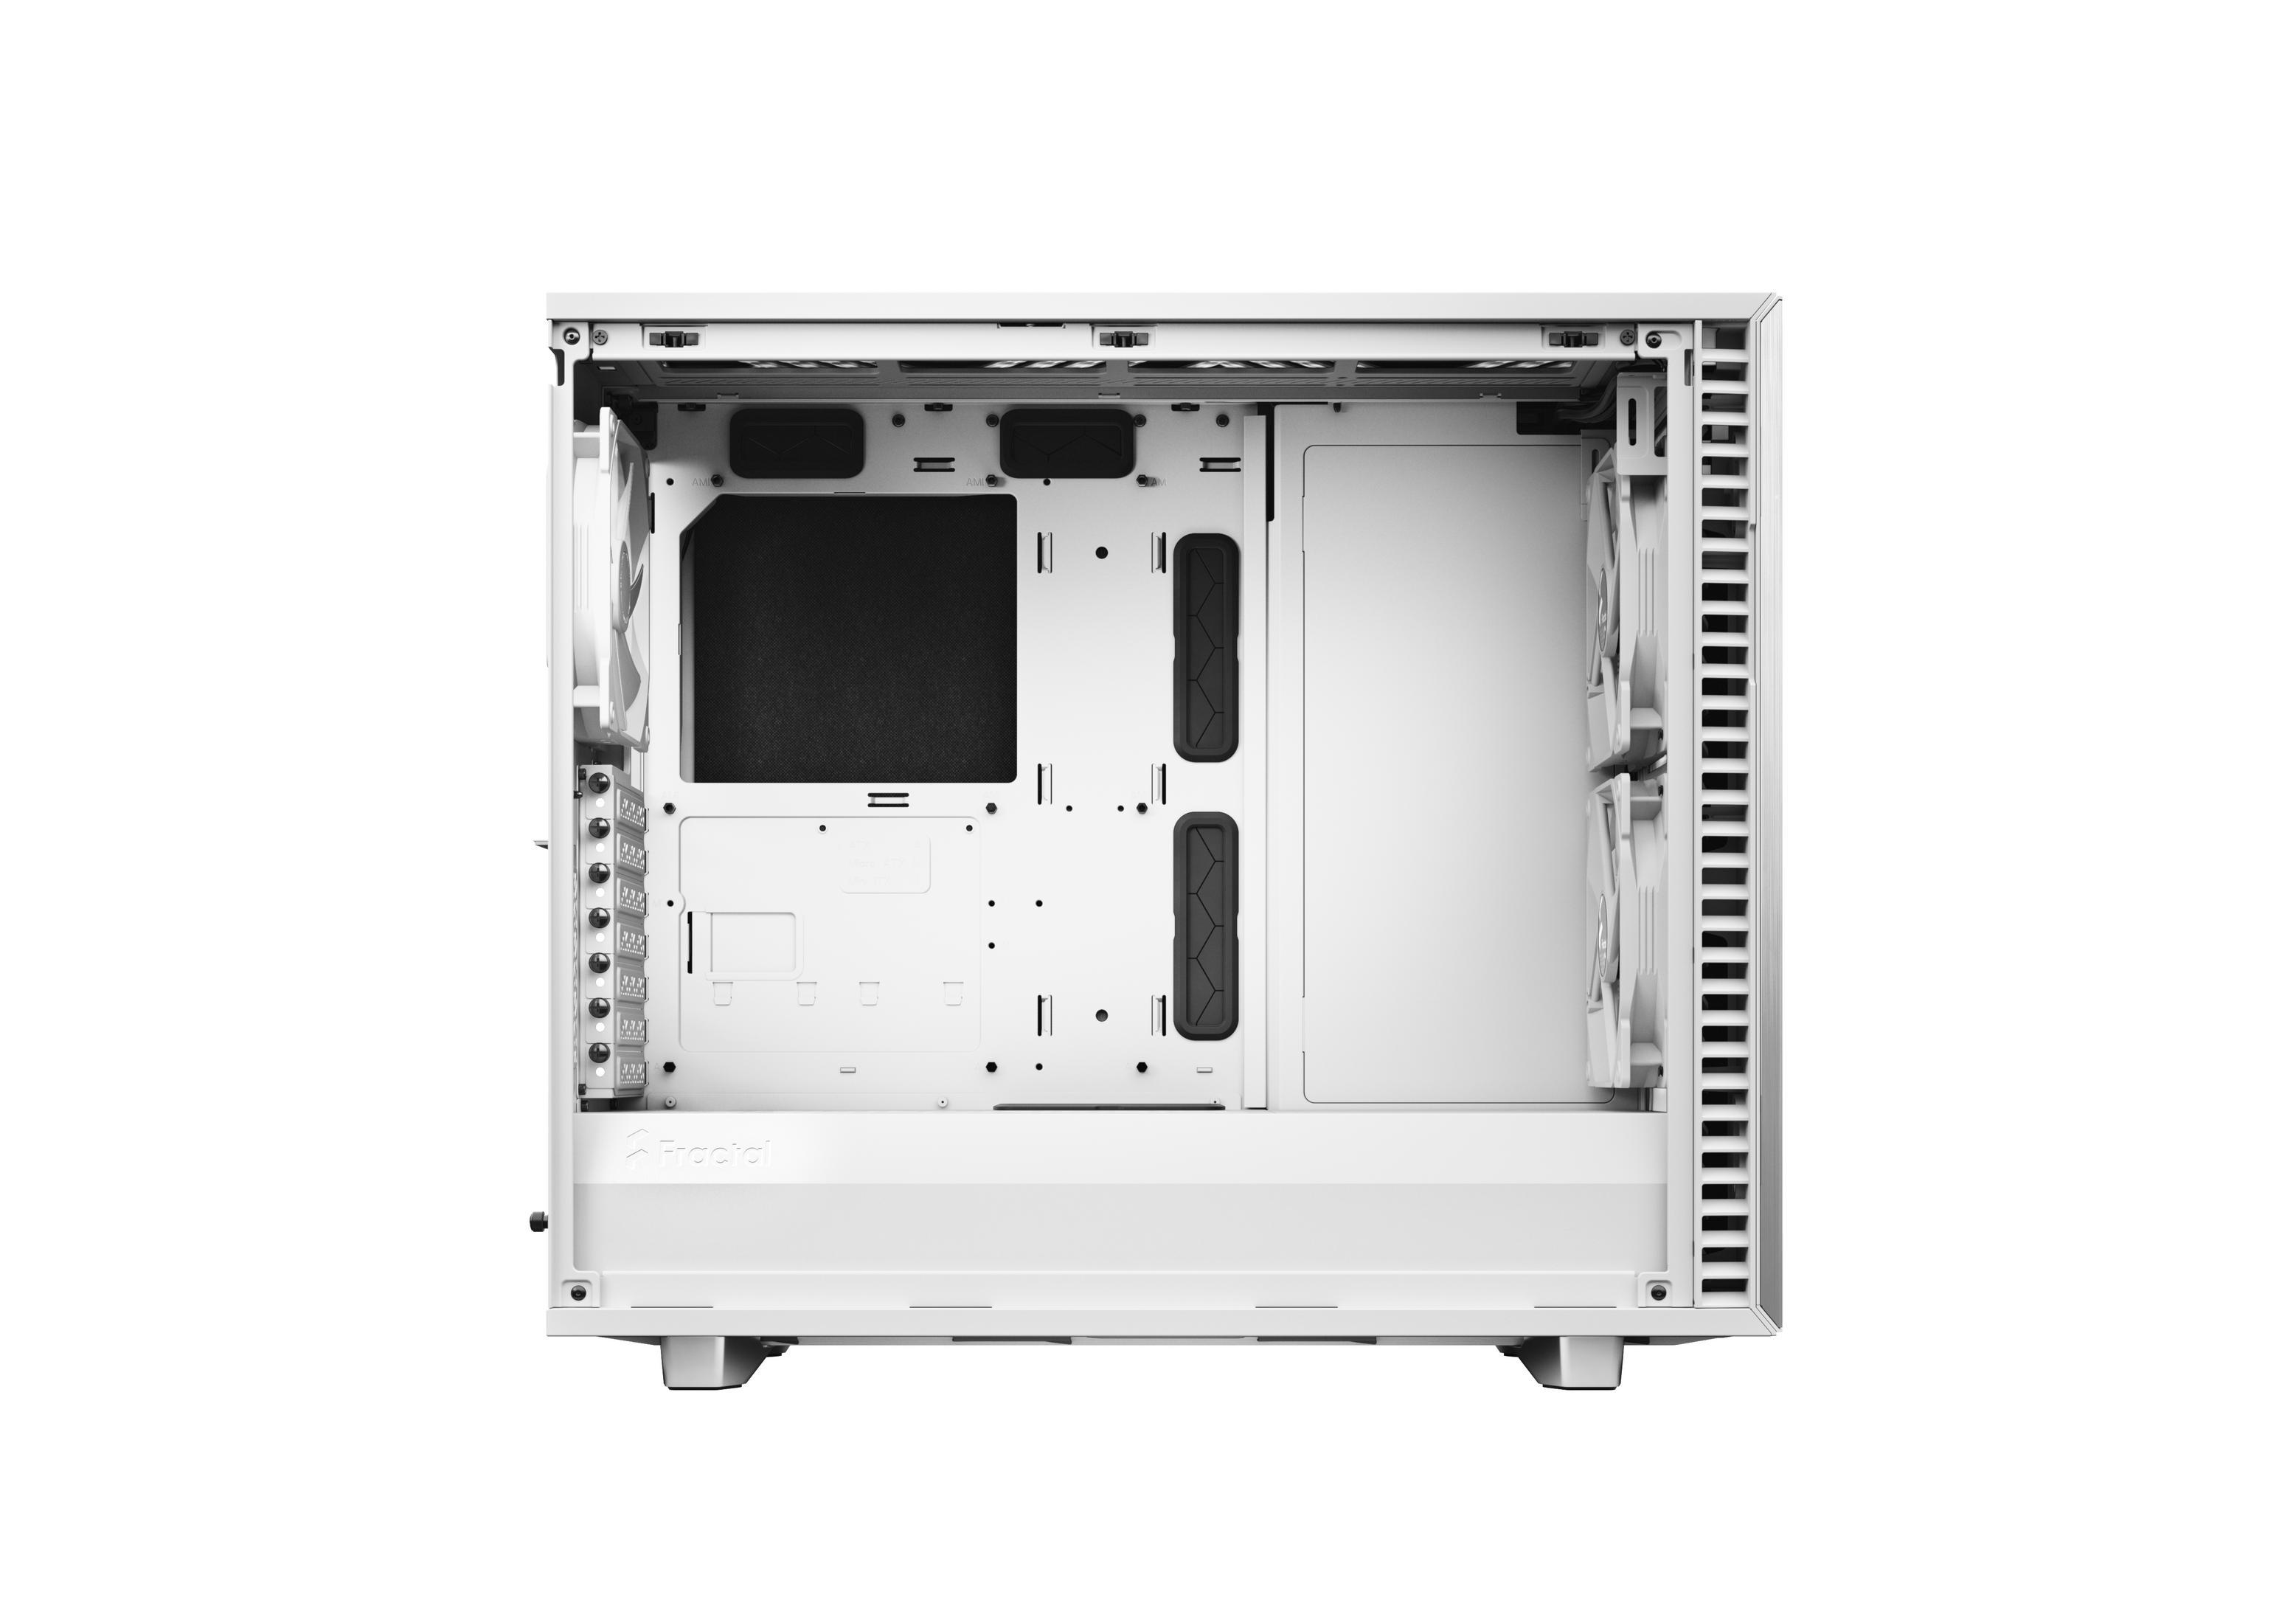 Weiß DEFINE WHITE FD-C-DEF7A-06 DESIGN PC-Gehäuse, 7 FRACTAL TG